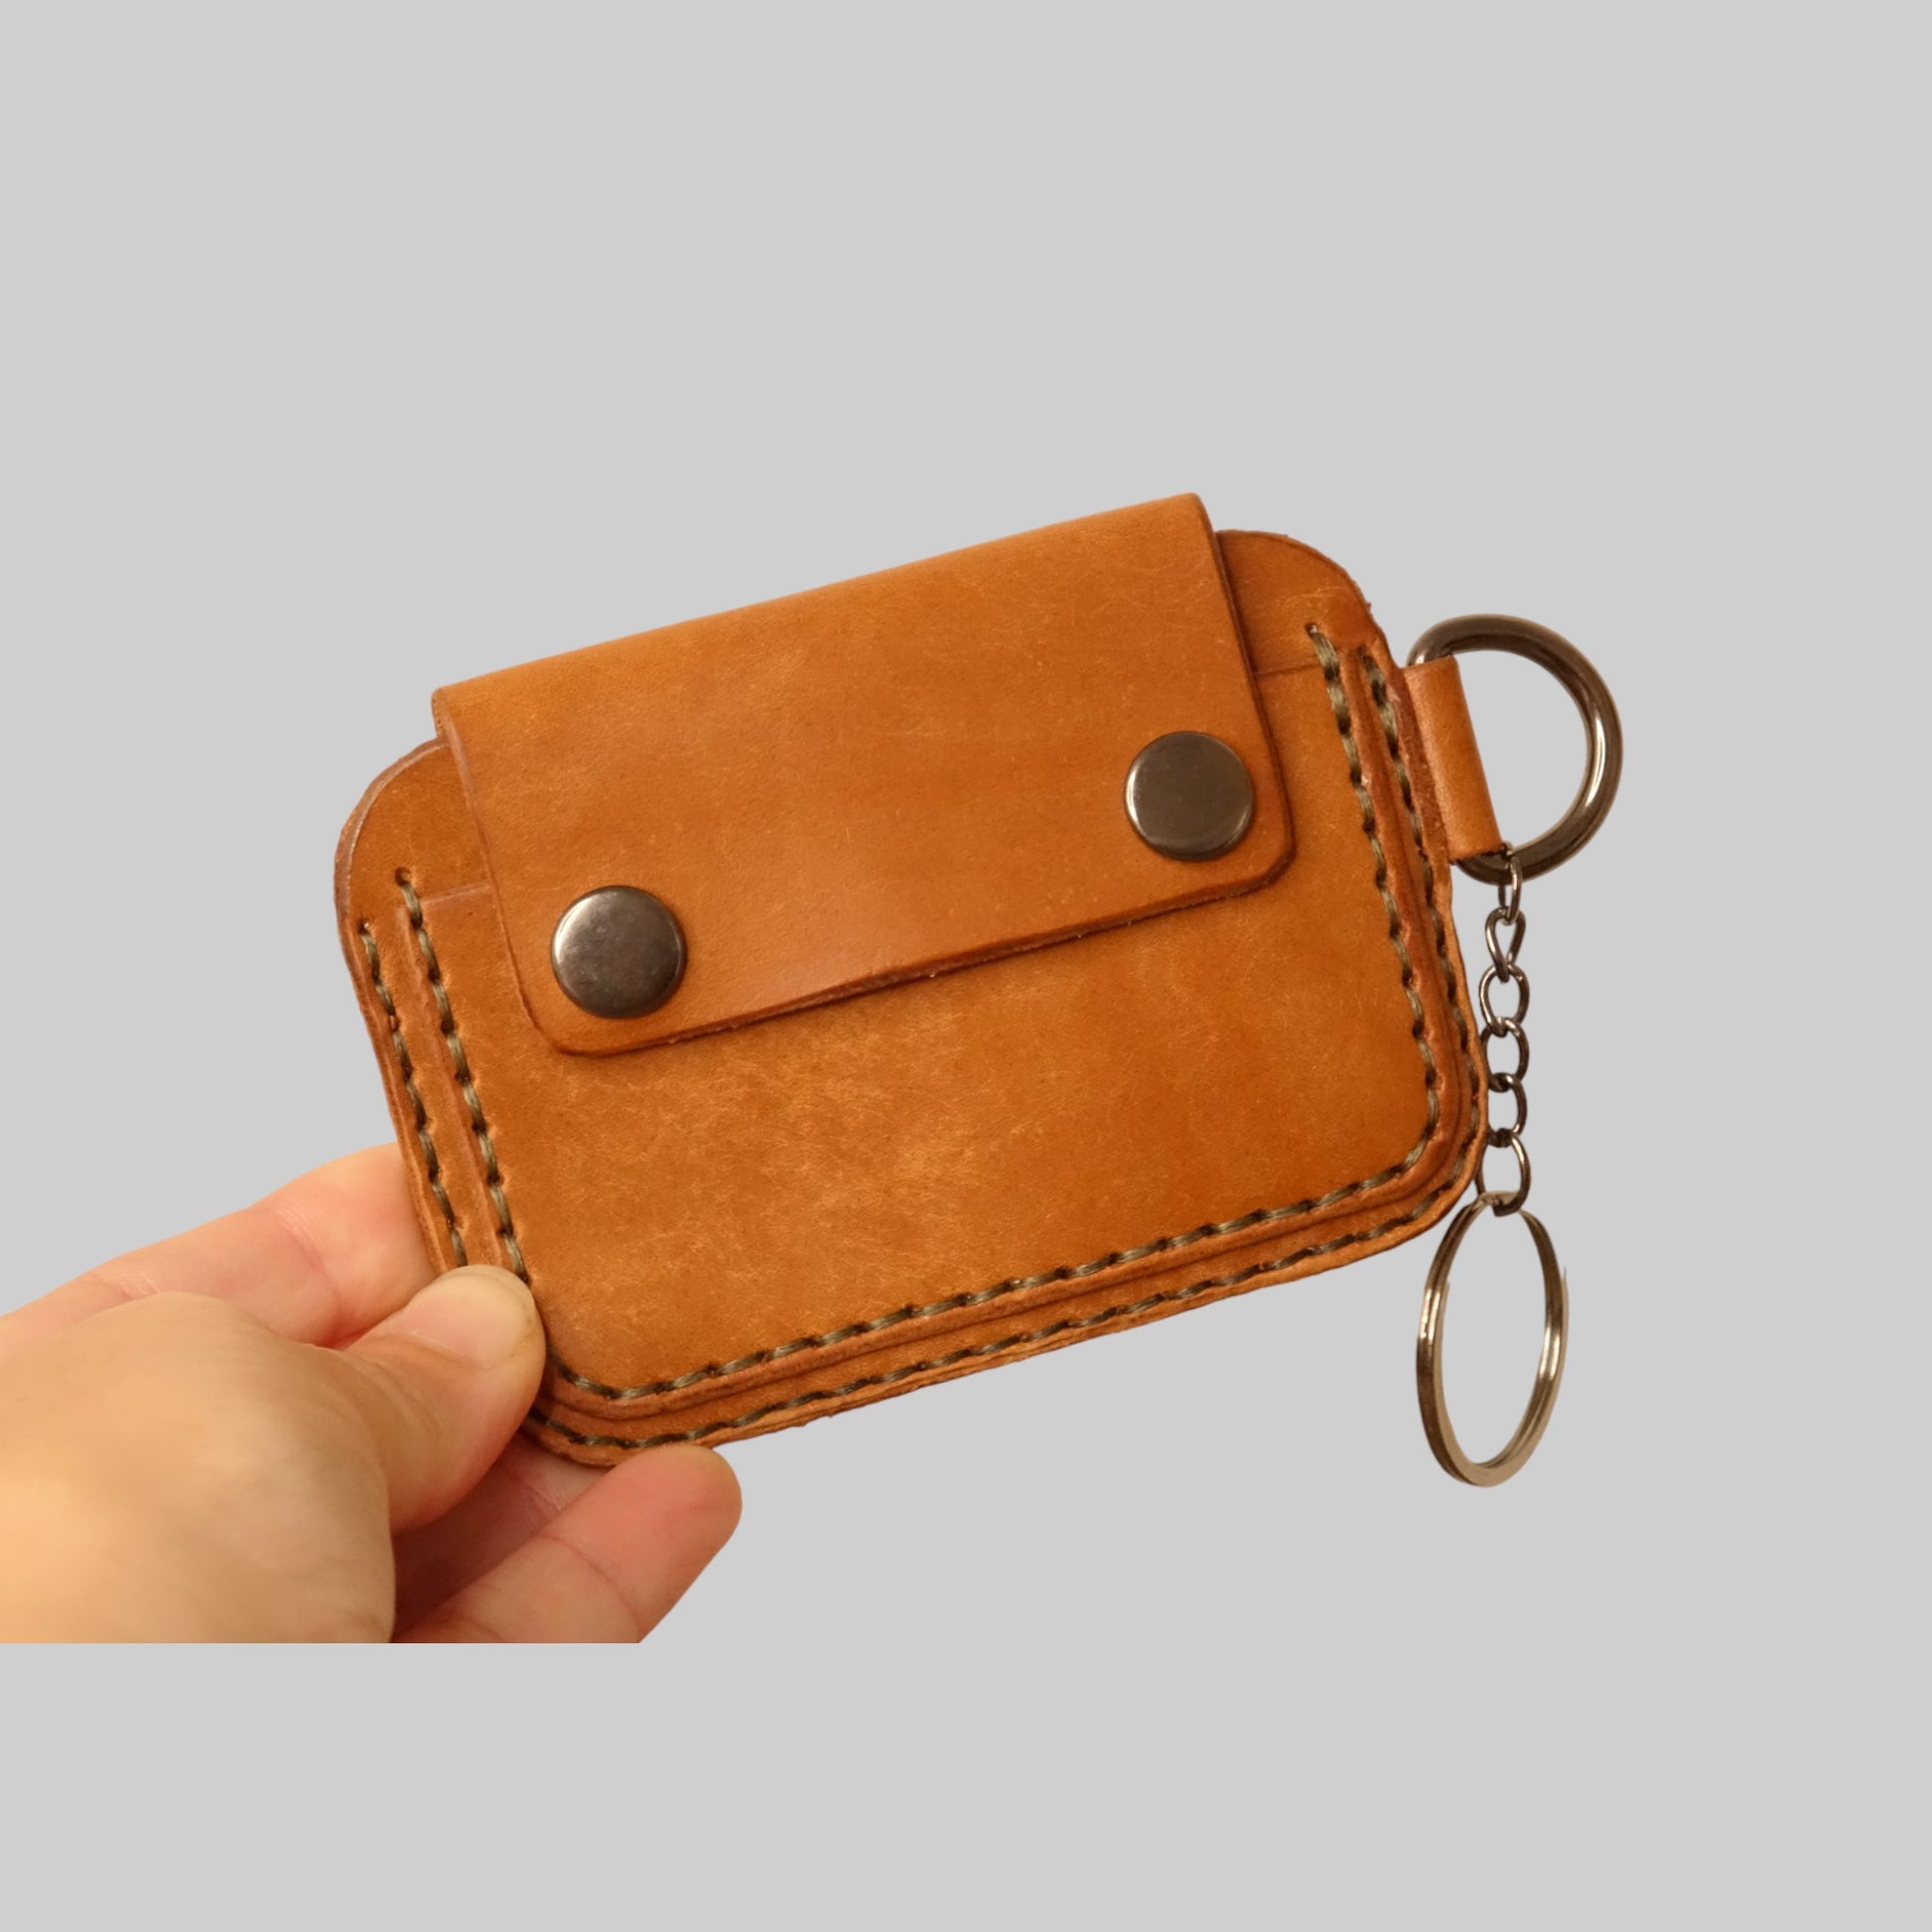 rgc handmade leather minimalist slim card holder wallet 10